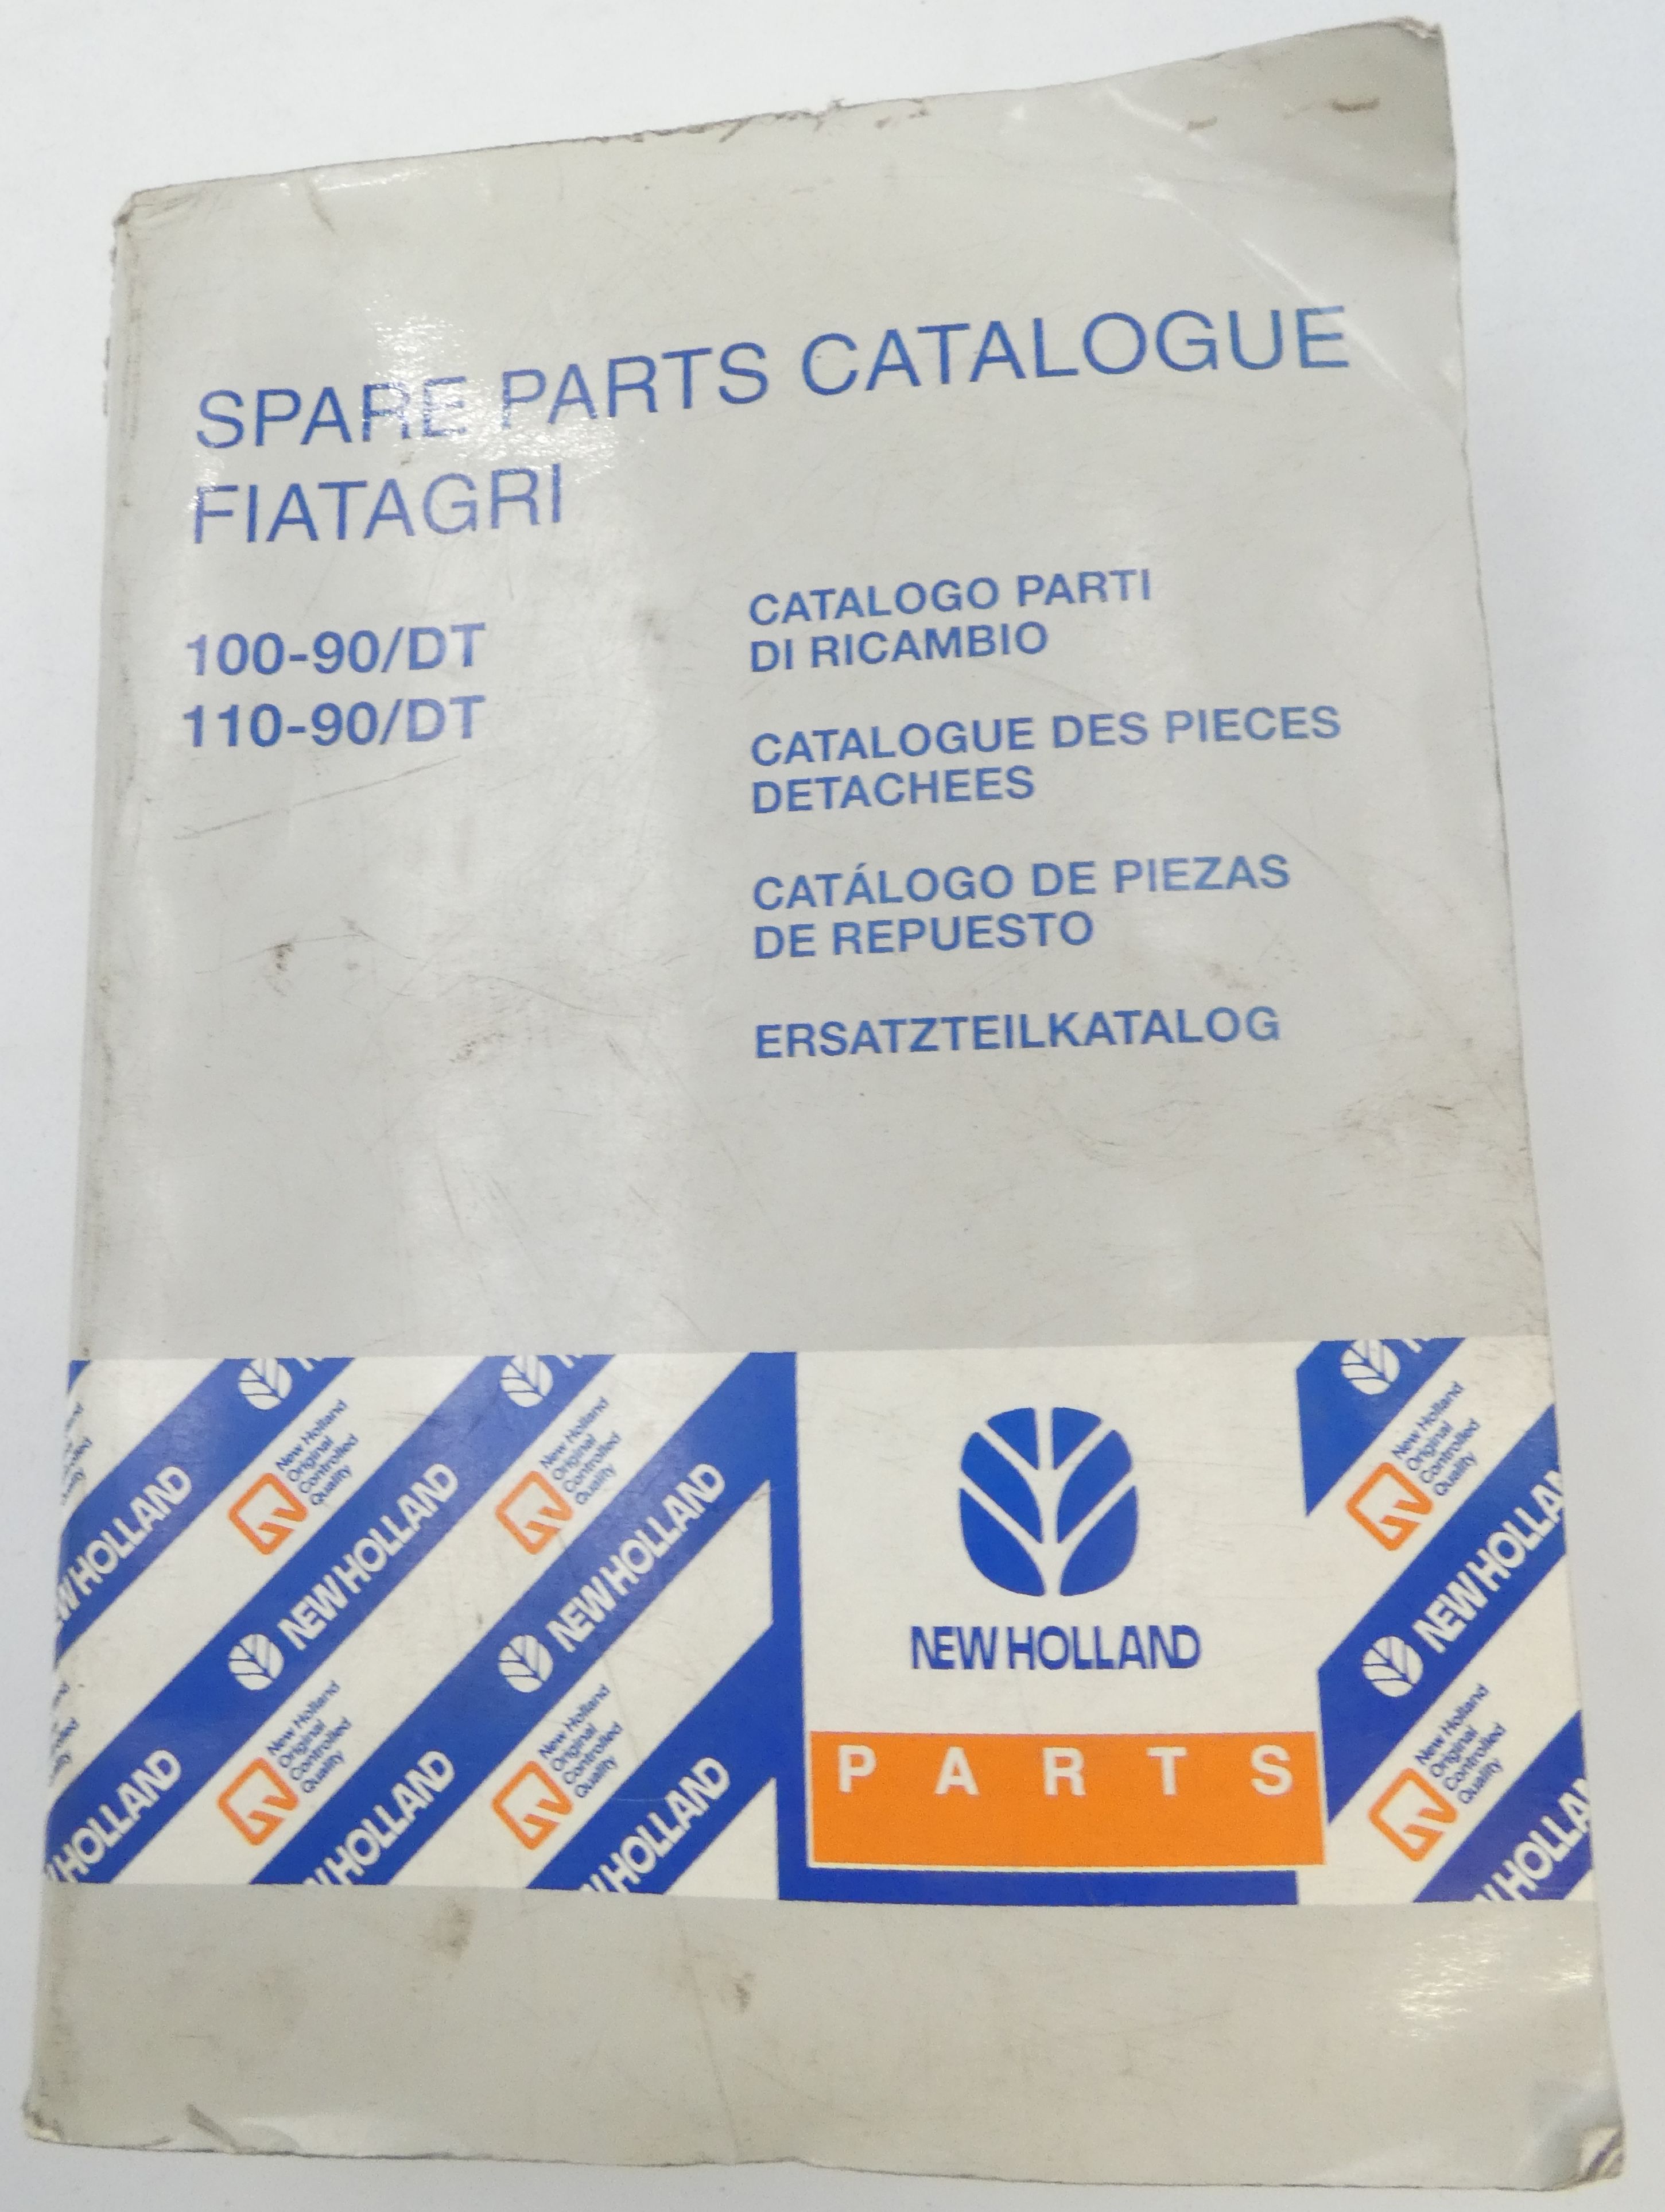 Fiat 100-90/DT, 110-90DT spare parts catalogue